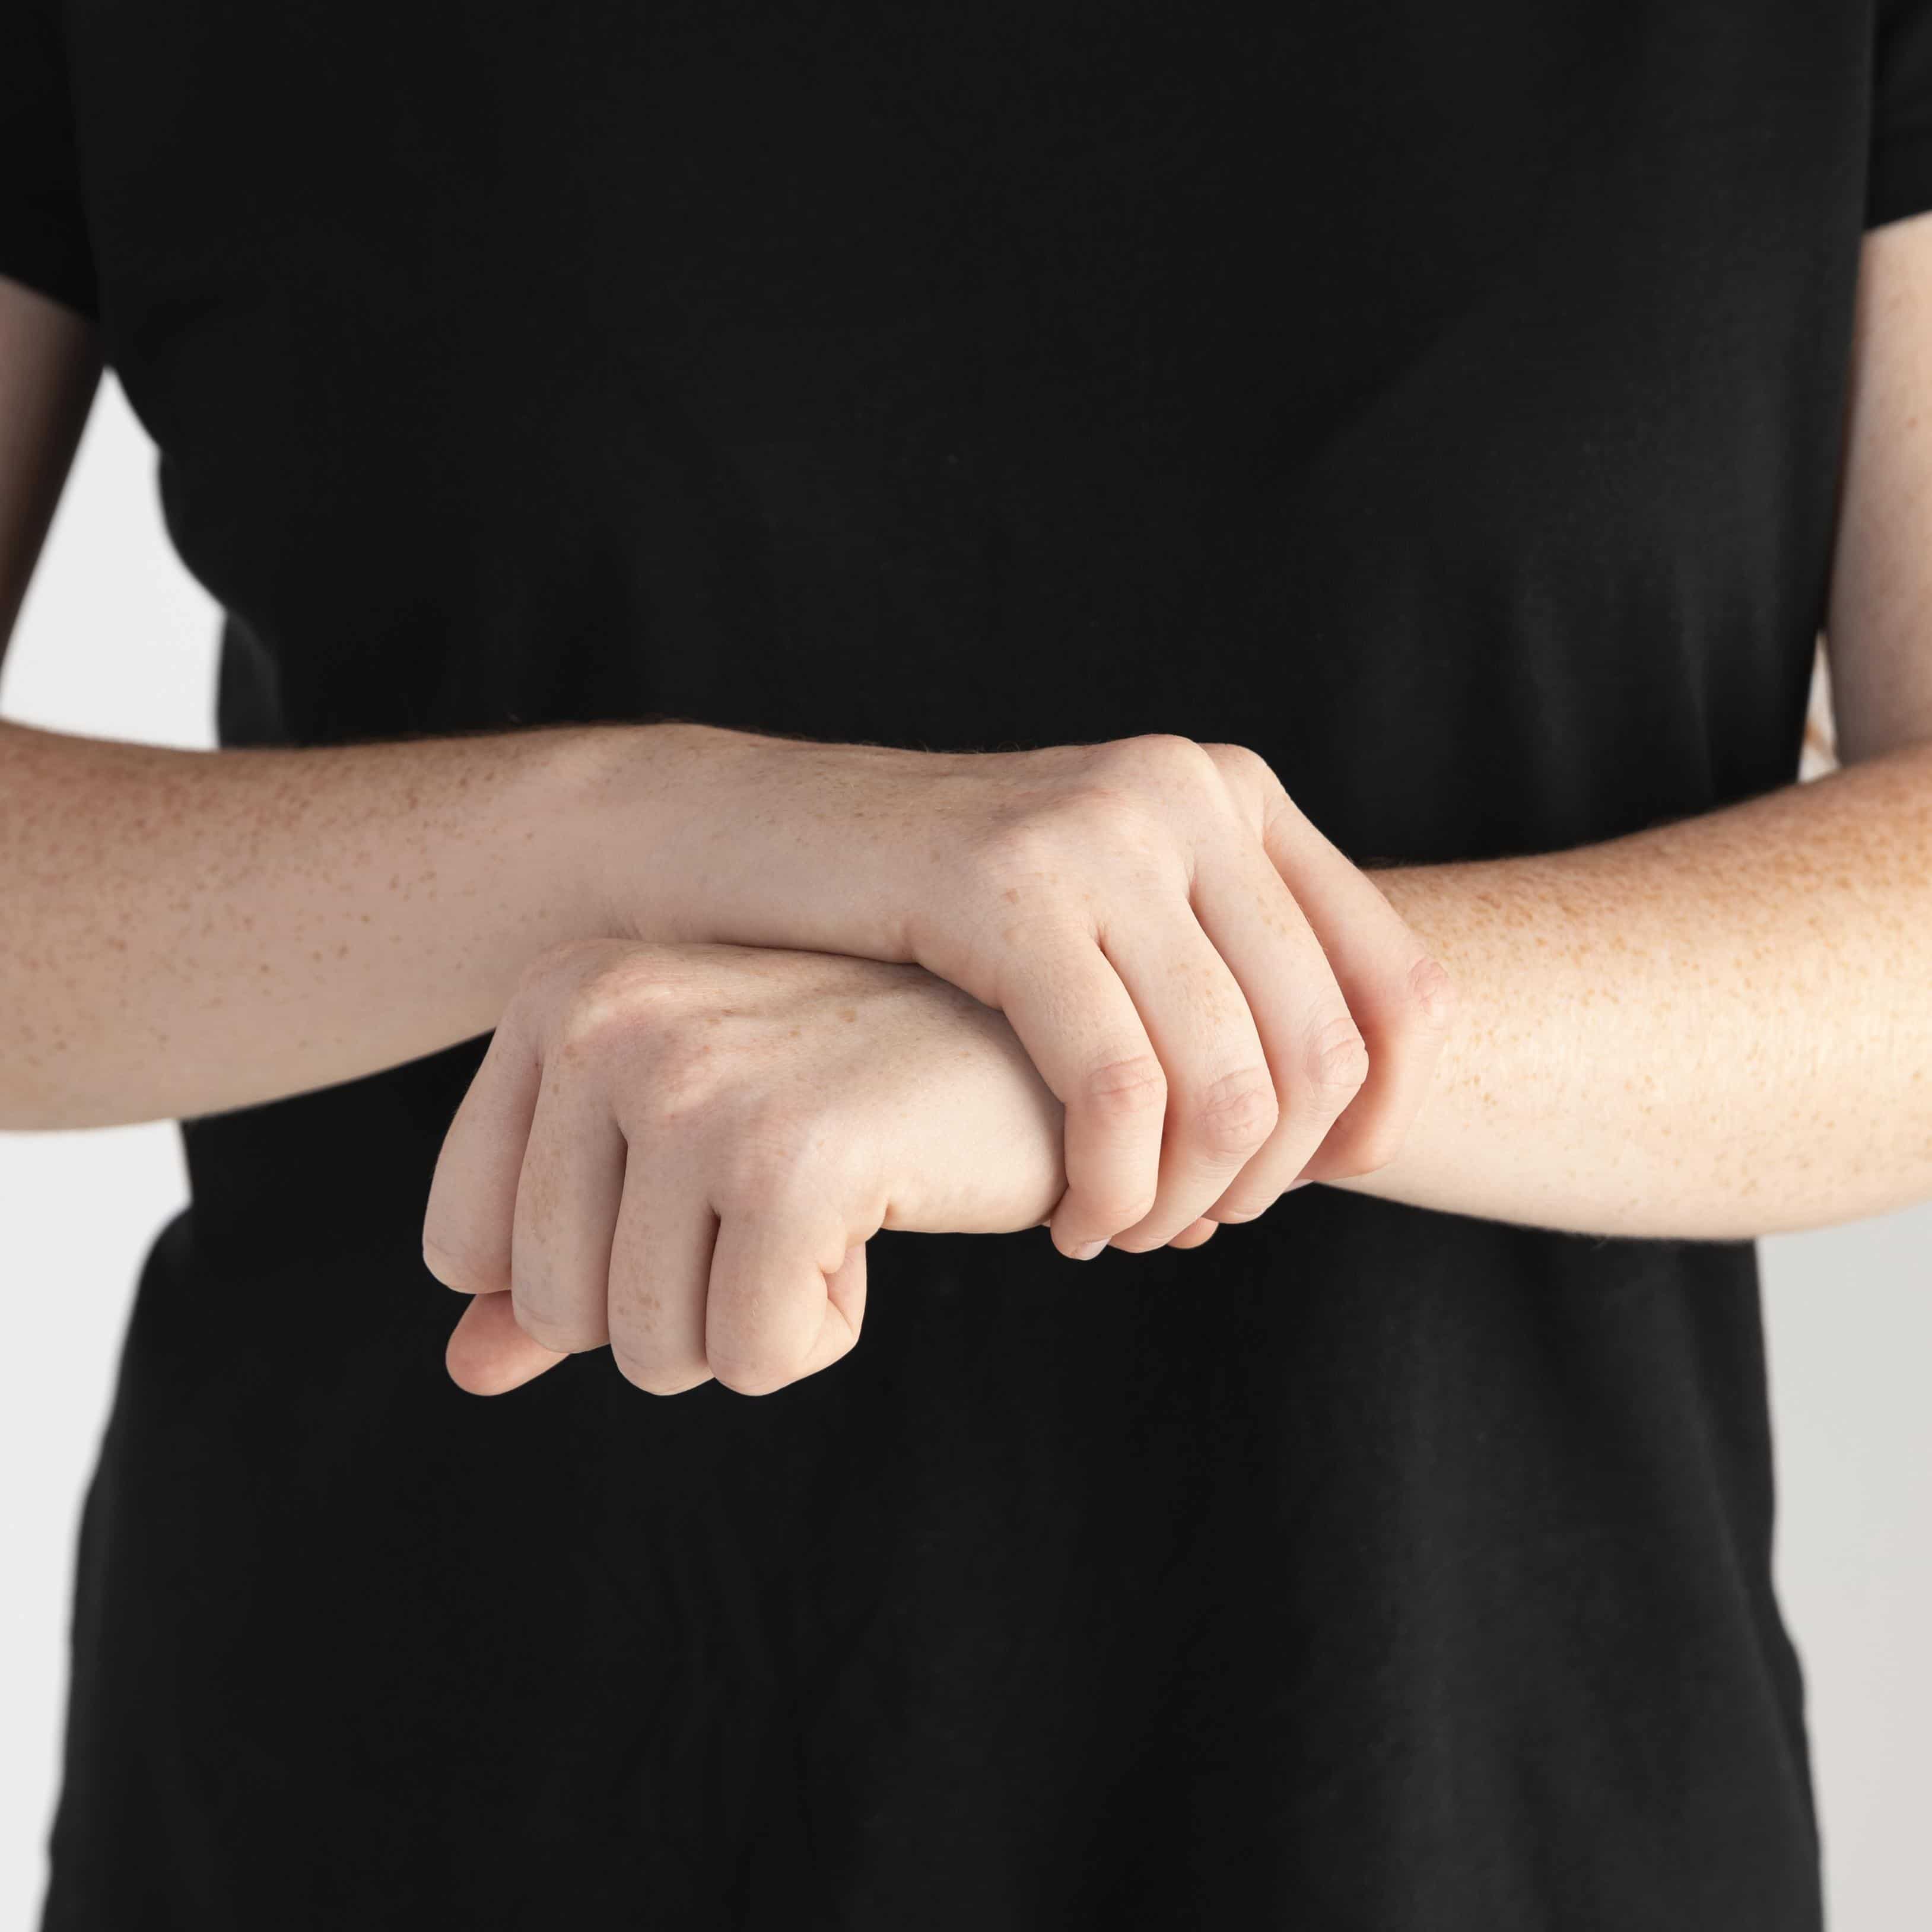 손목 통증을 느끼는 사람이 손목을 부여 잡고 있는 사진